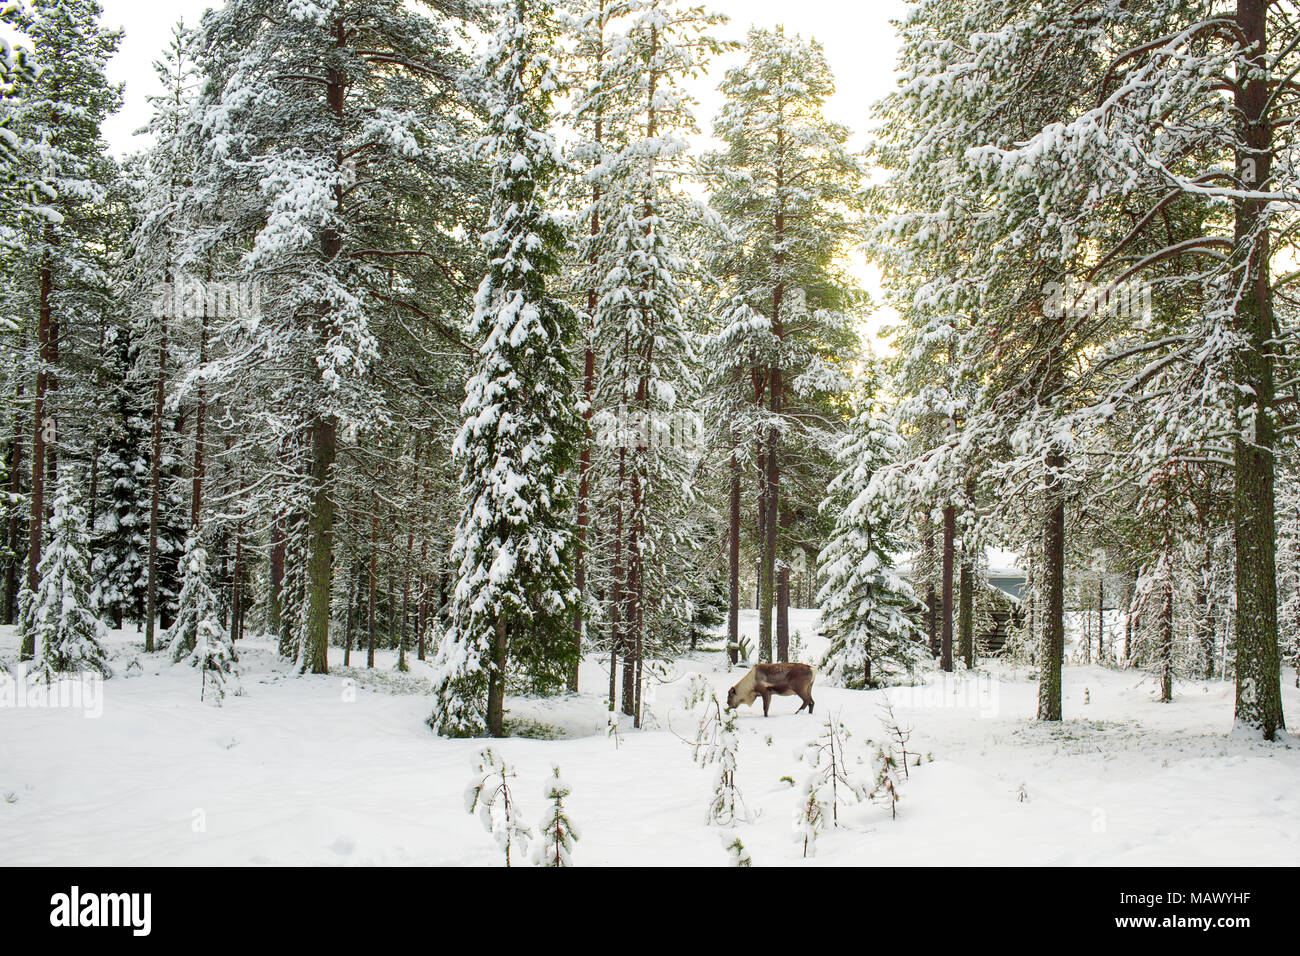 Landschaftlich schöne Aussicht auf verschneite Wald mit hohen Kiefern und ein Rentier im Winter in Lappland, Finnland, Grußkarten Weihnachten in der Saison Stockfoto